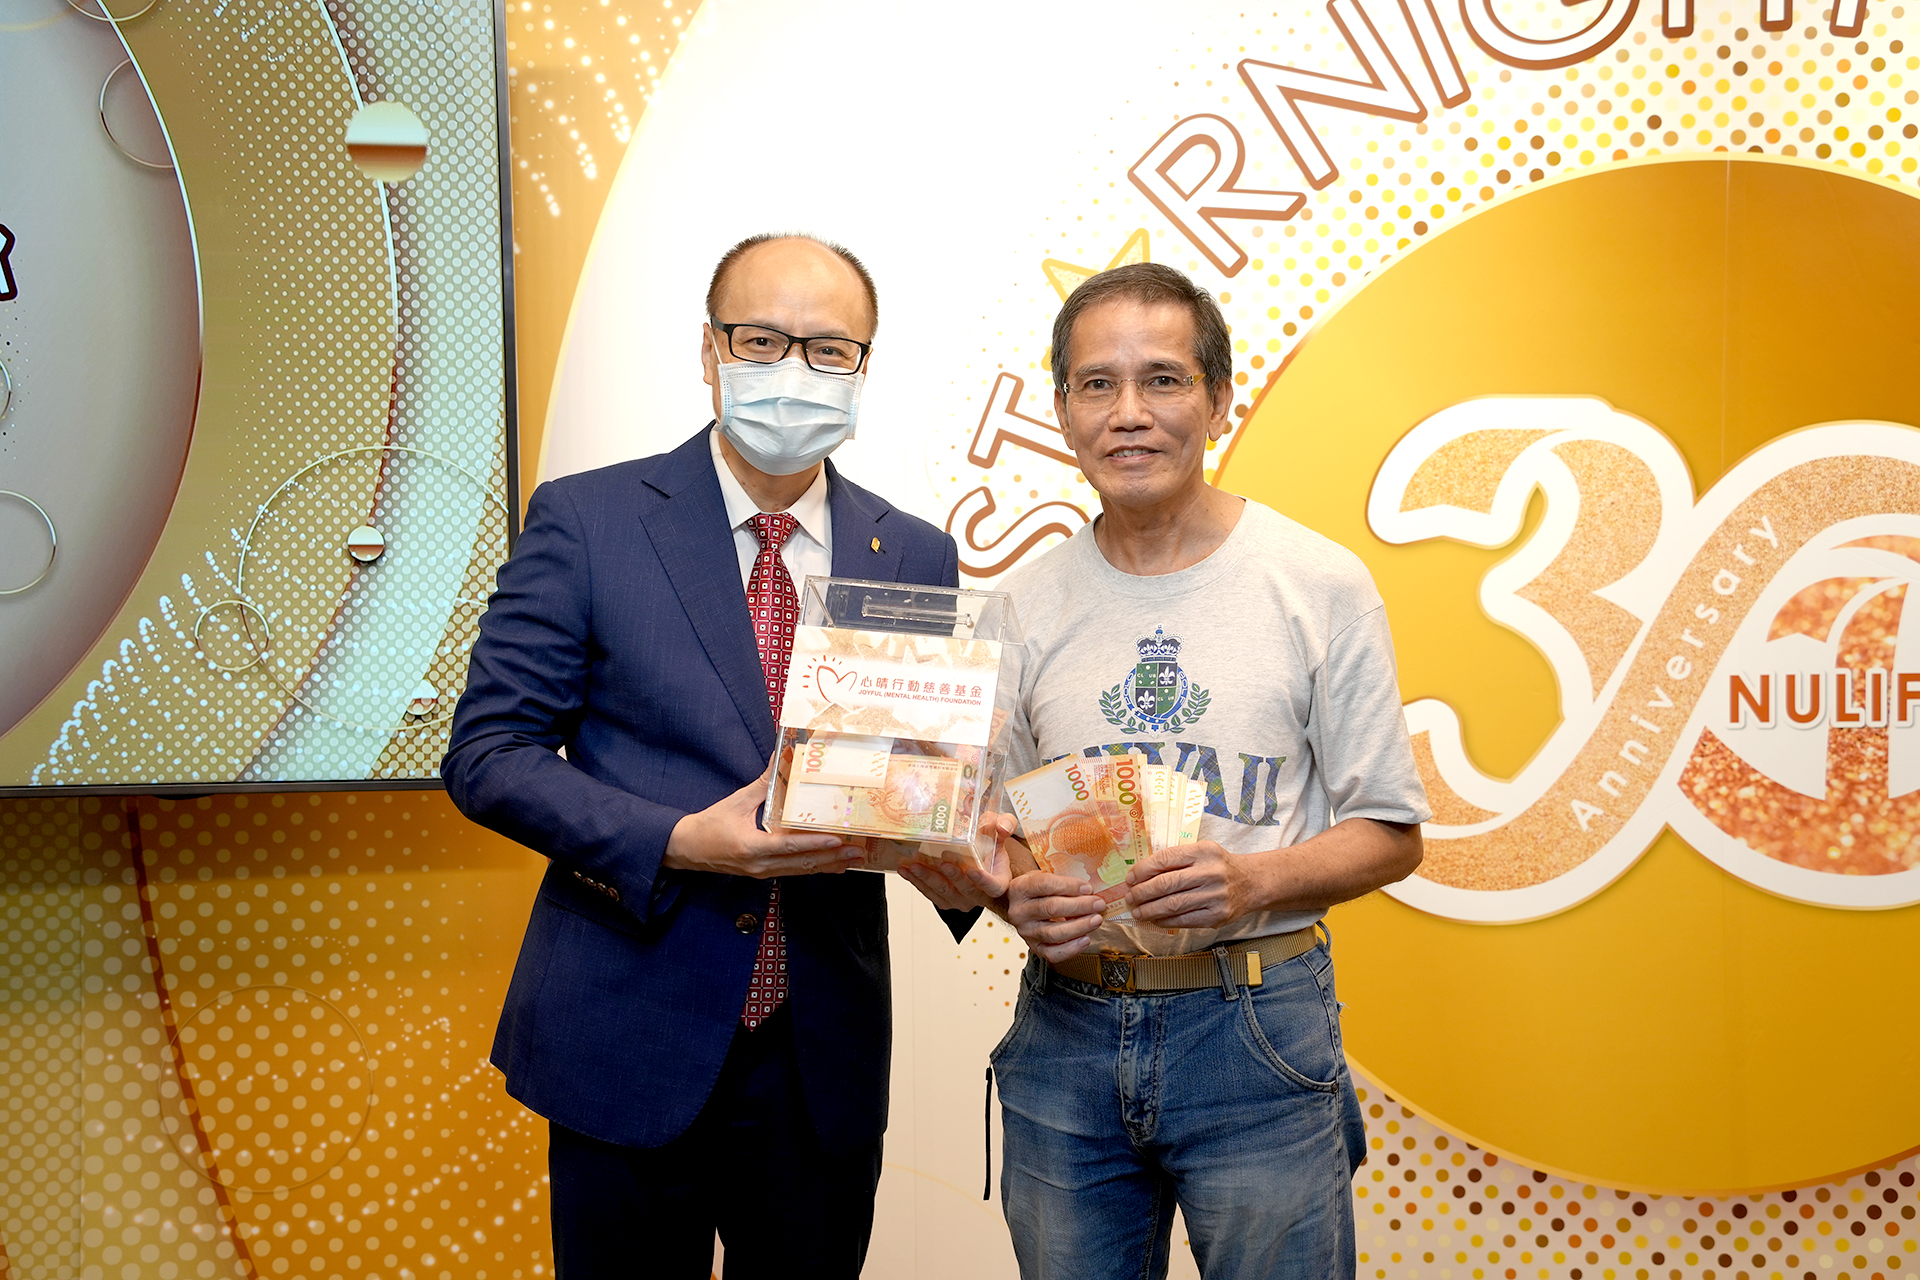 恭賀何鎮輝先生從星級百萬富翁遊戲贏取HK$10,000獎金並與公司合共捐助HK$4000予「心晴行動慈善基金」